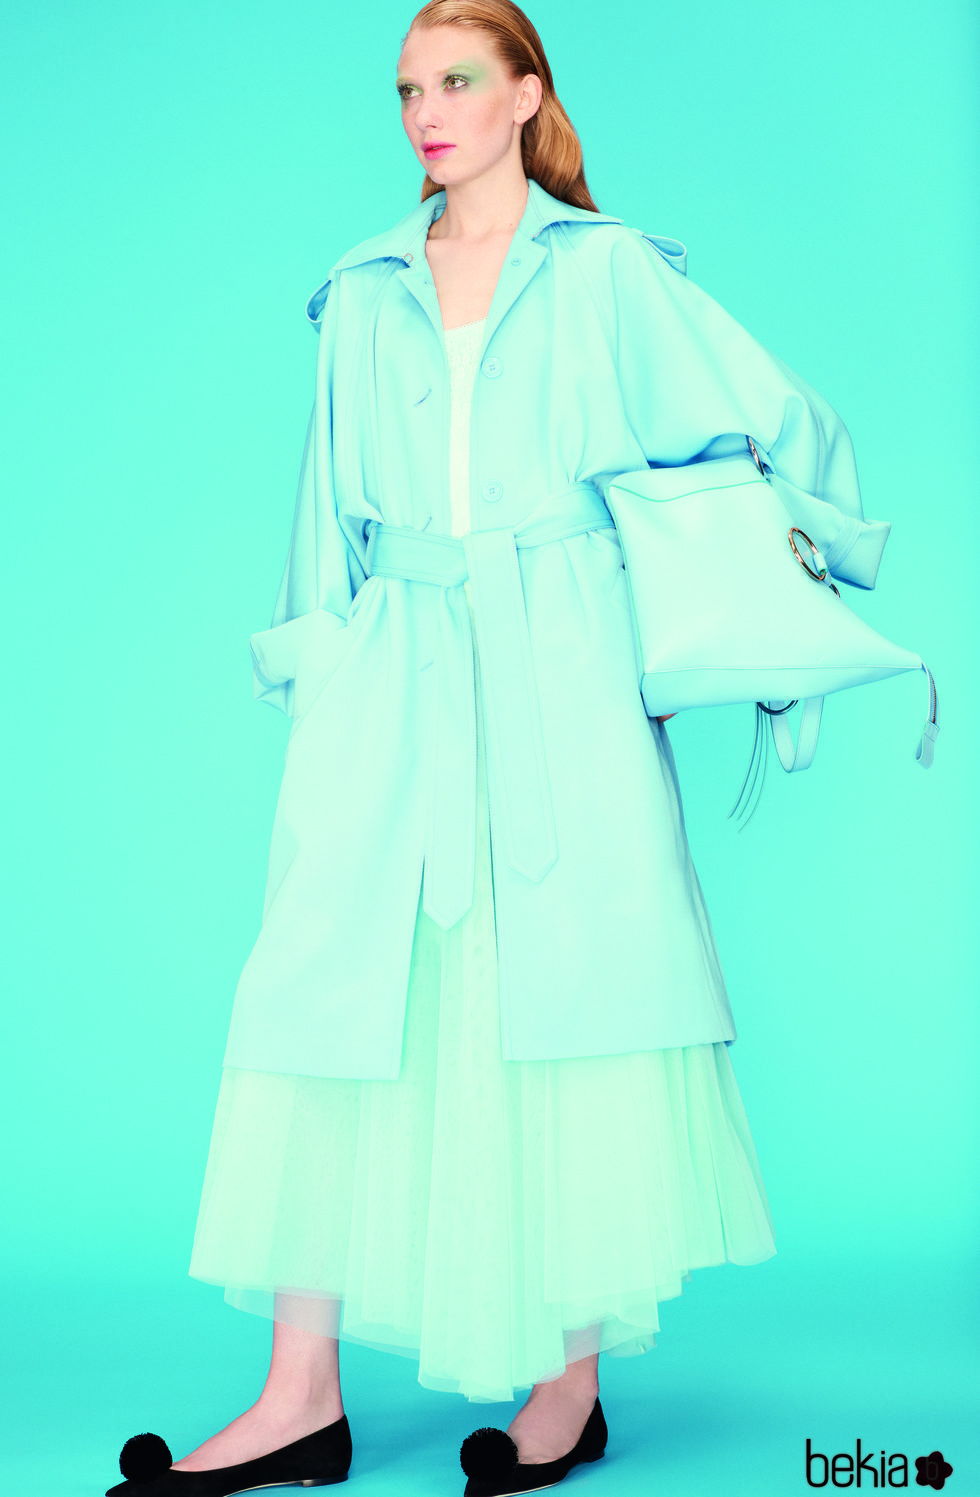 Falda de tul azul de la colección primavera 2018 de Nina Ricci